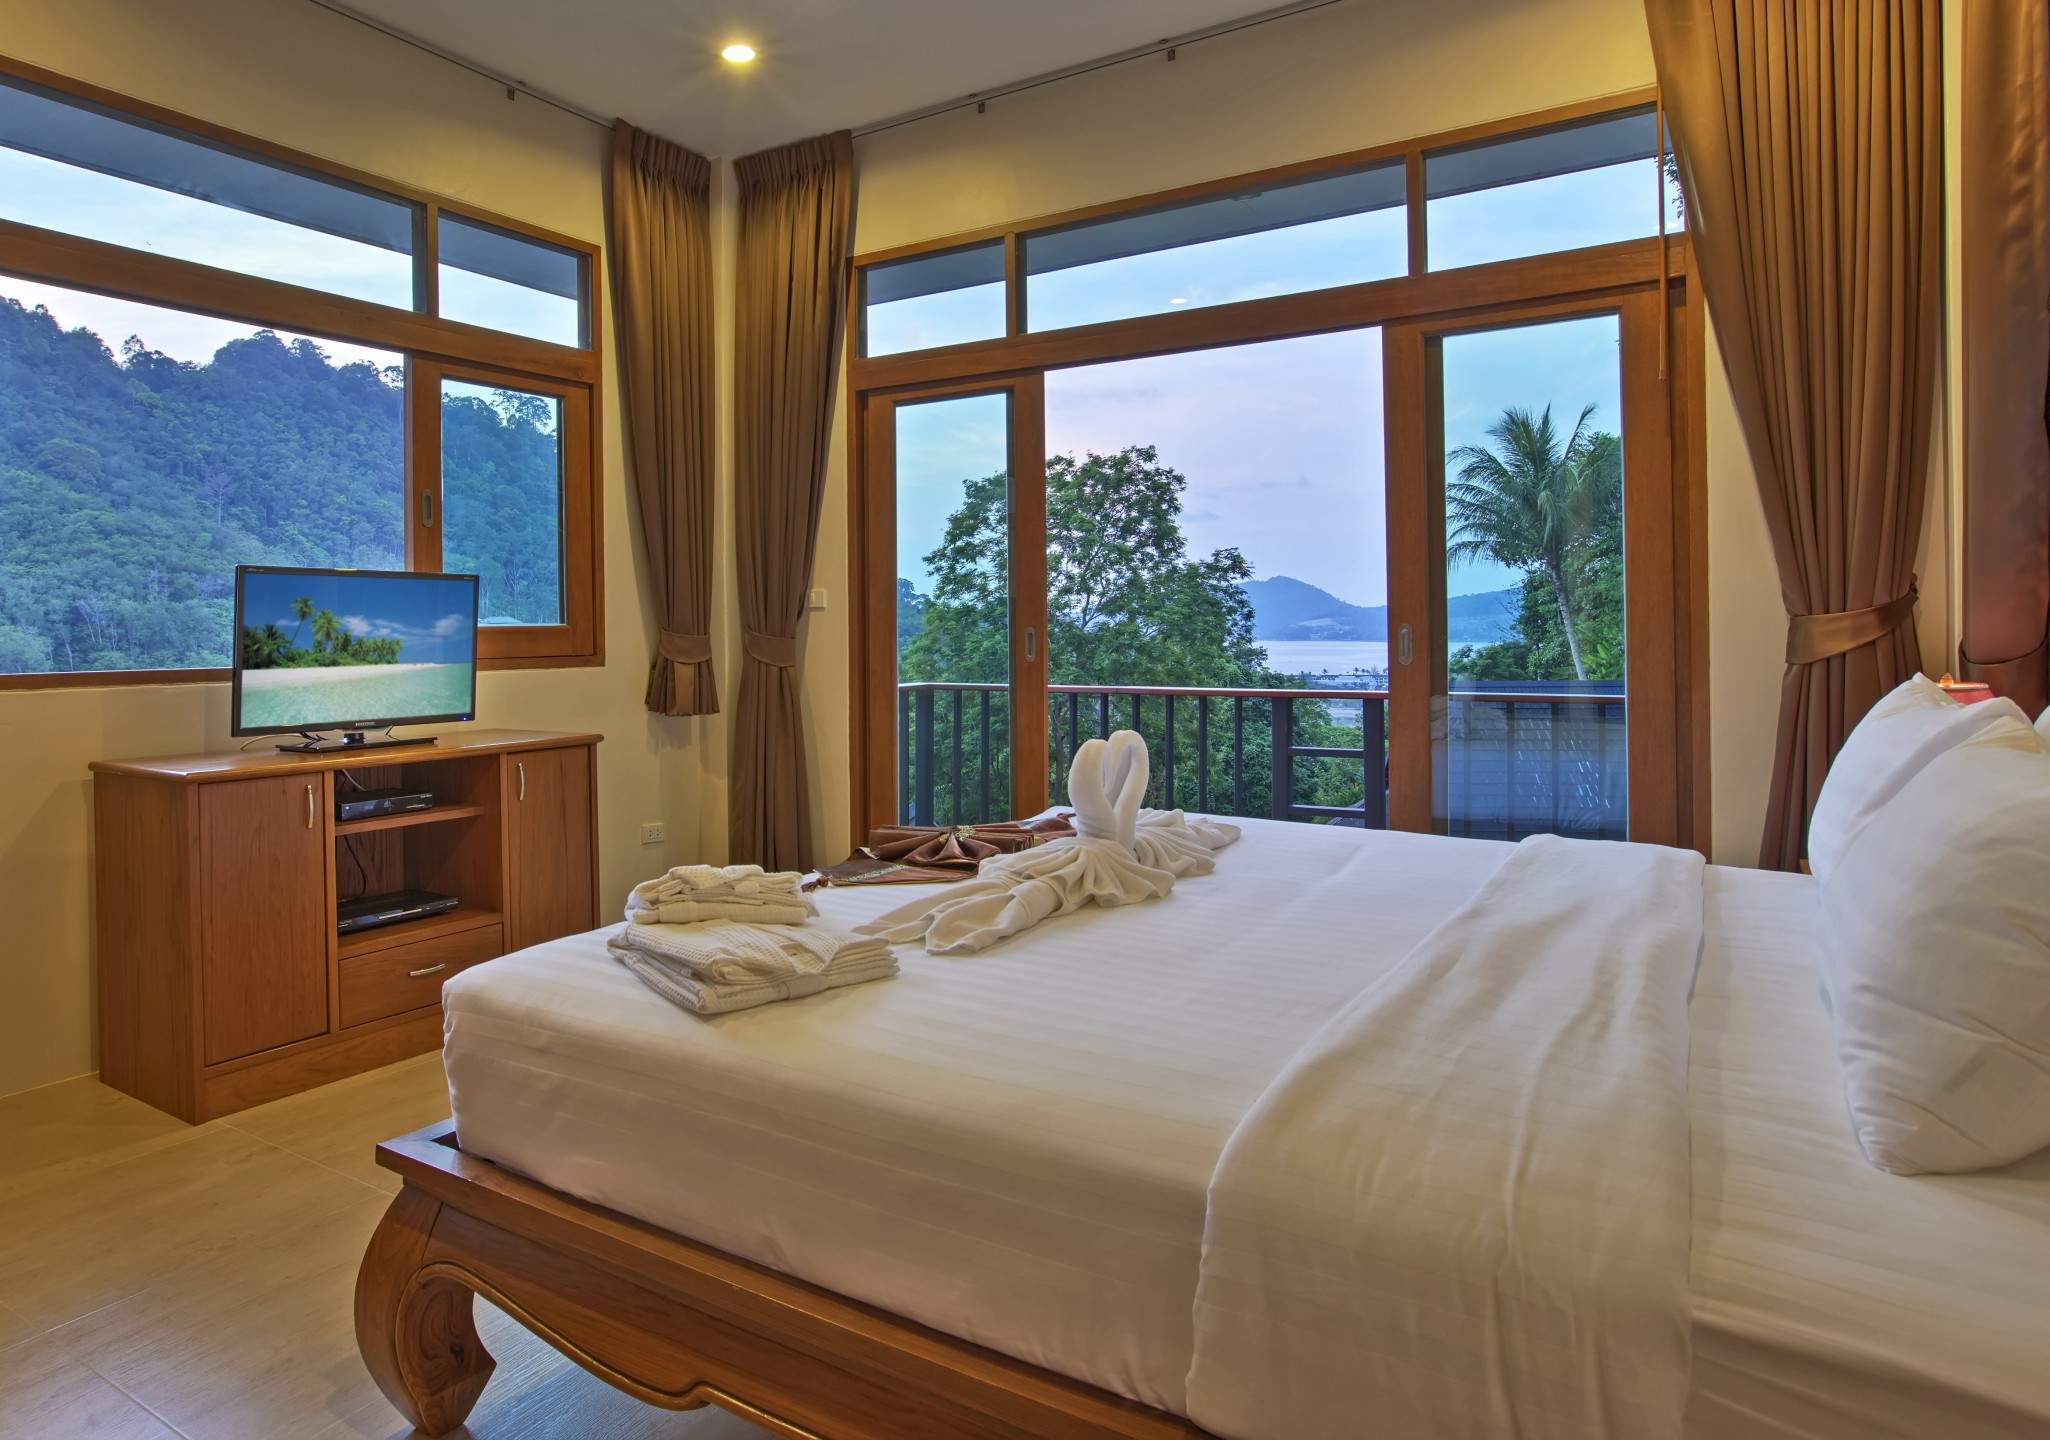 Rent villa Patong Hill 8, Thailand, Phuket, Patong | Villacarte